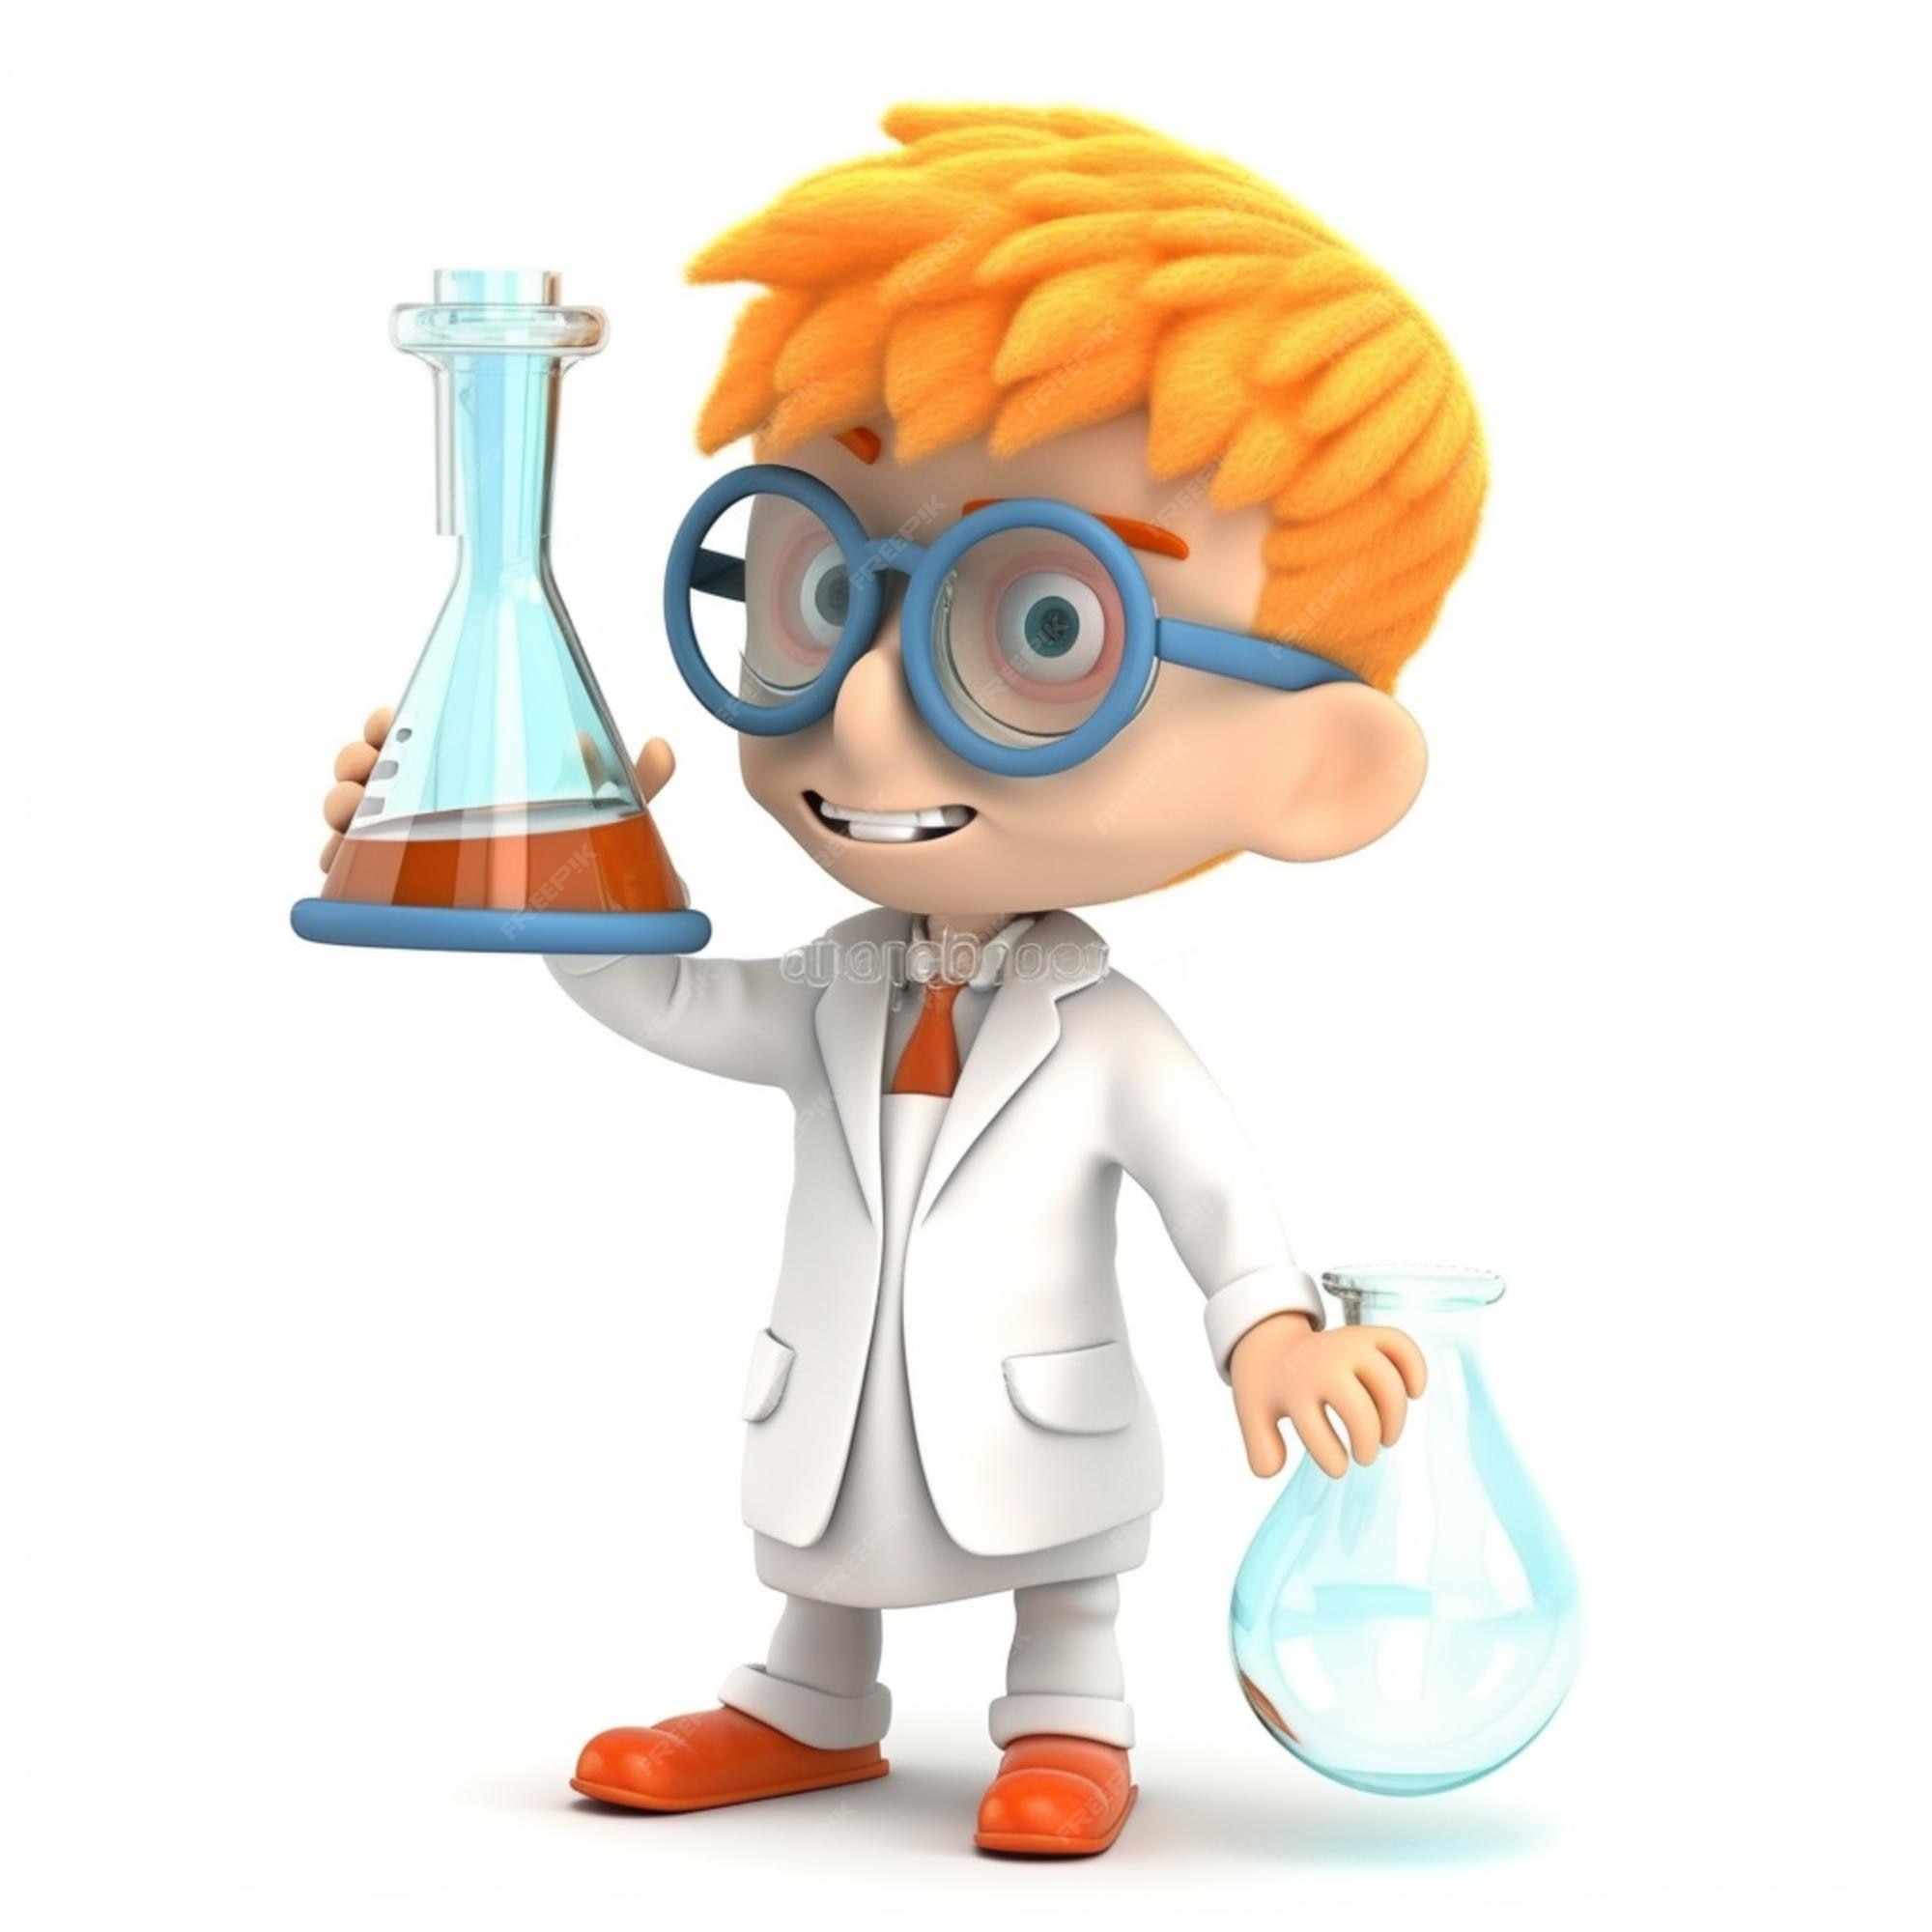 dessin animé garçon scientifique tenant une fiole en laboratoire